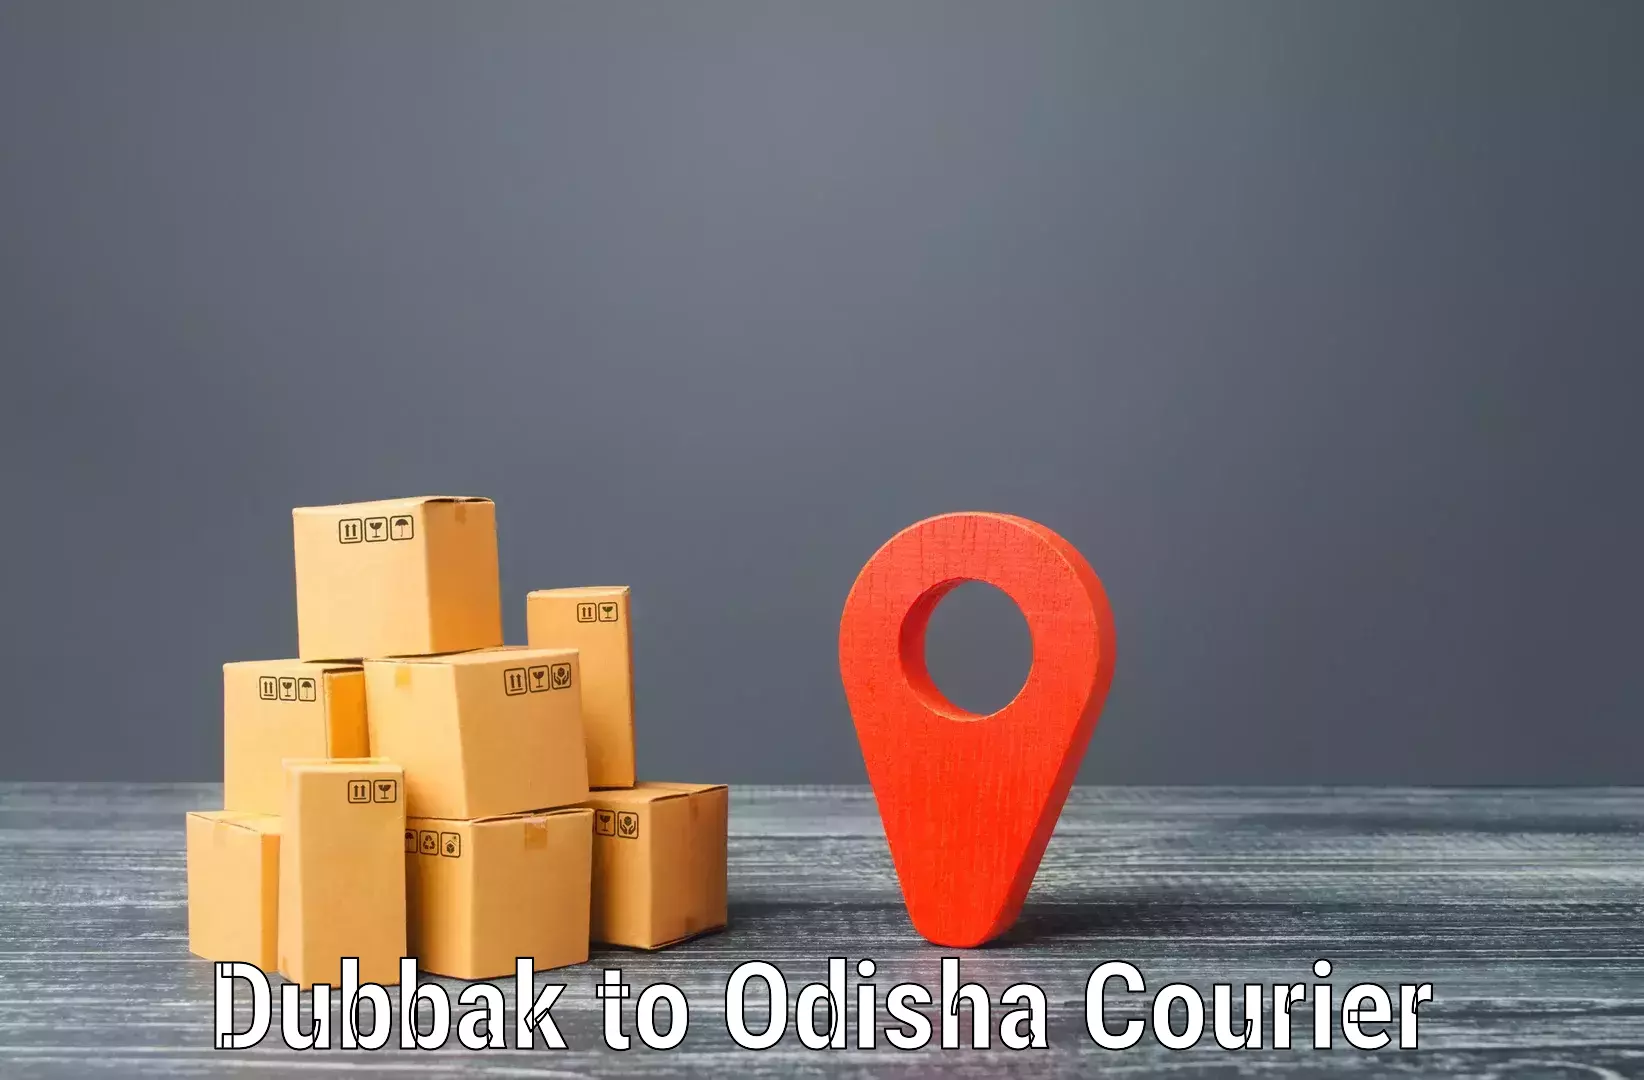 Customizable shipping options Dubbak to Ukhunda